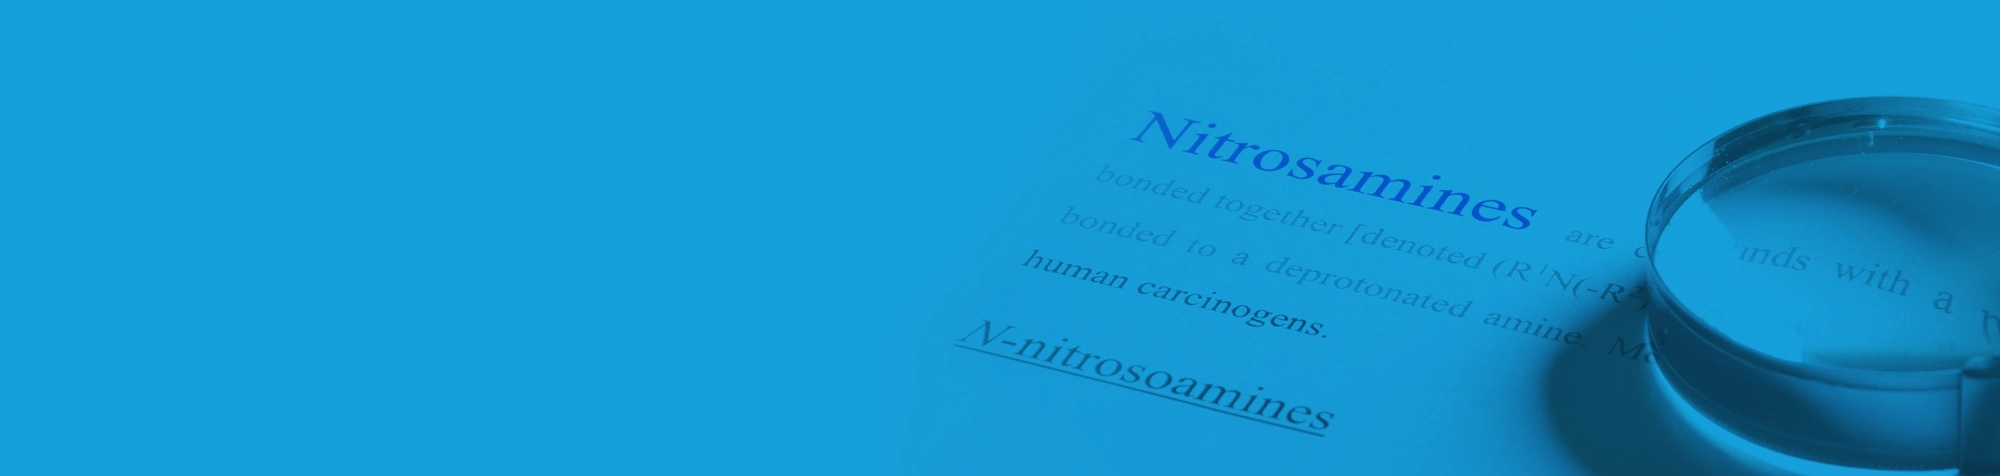 Nitrosamines